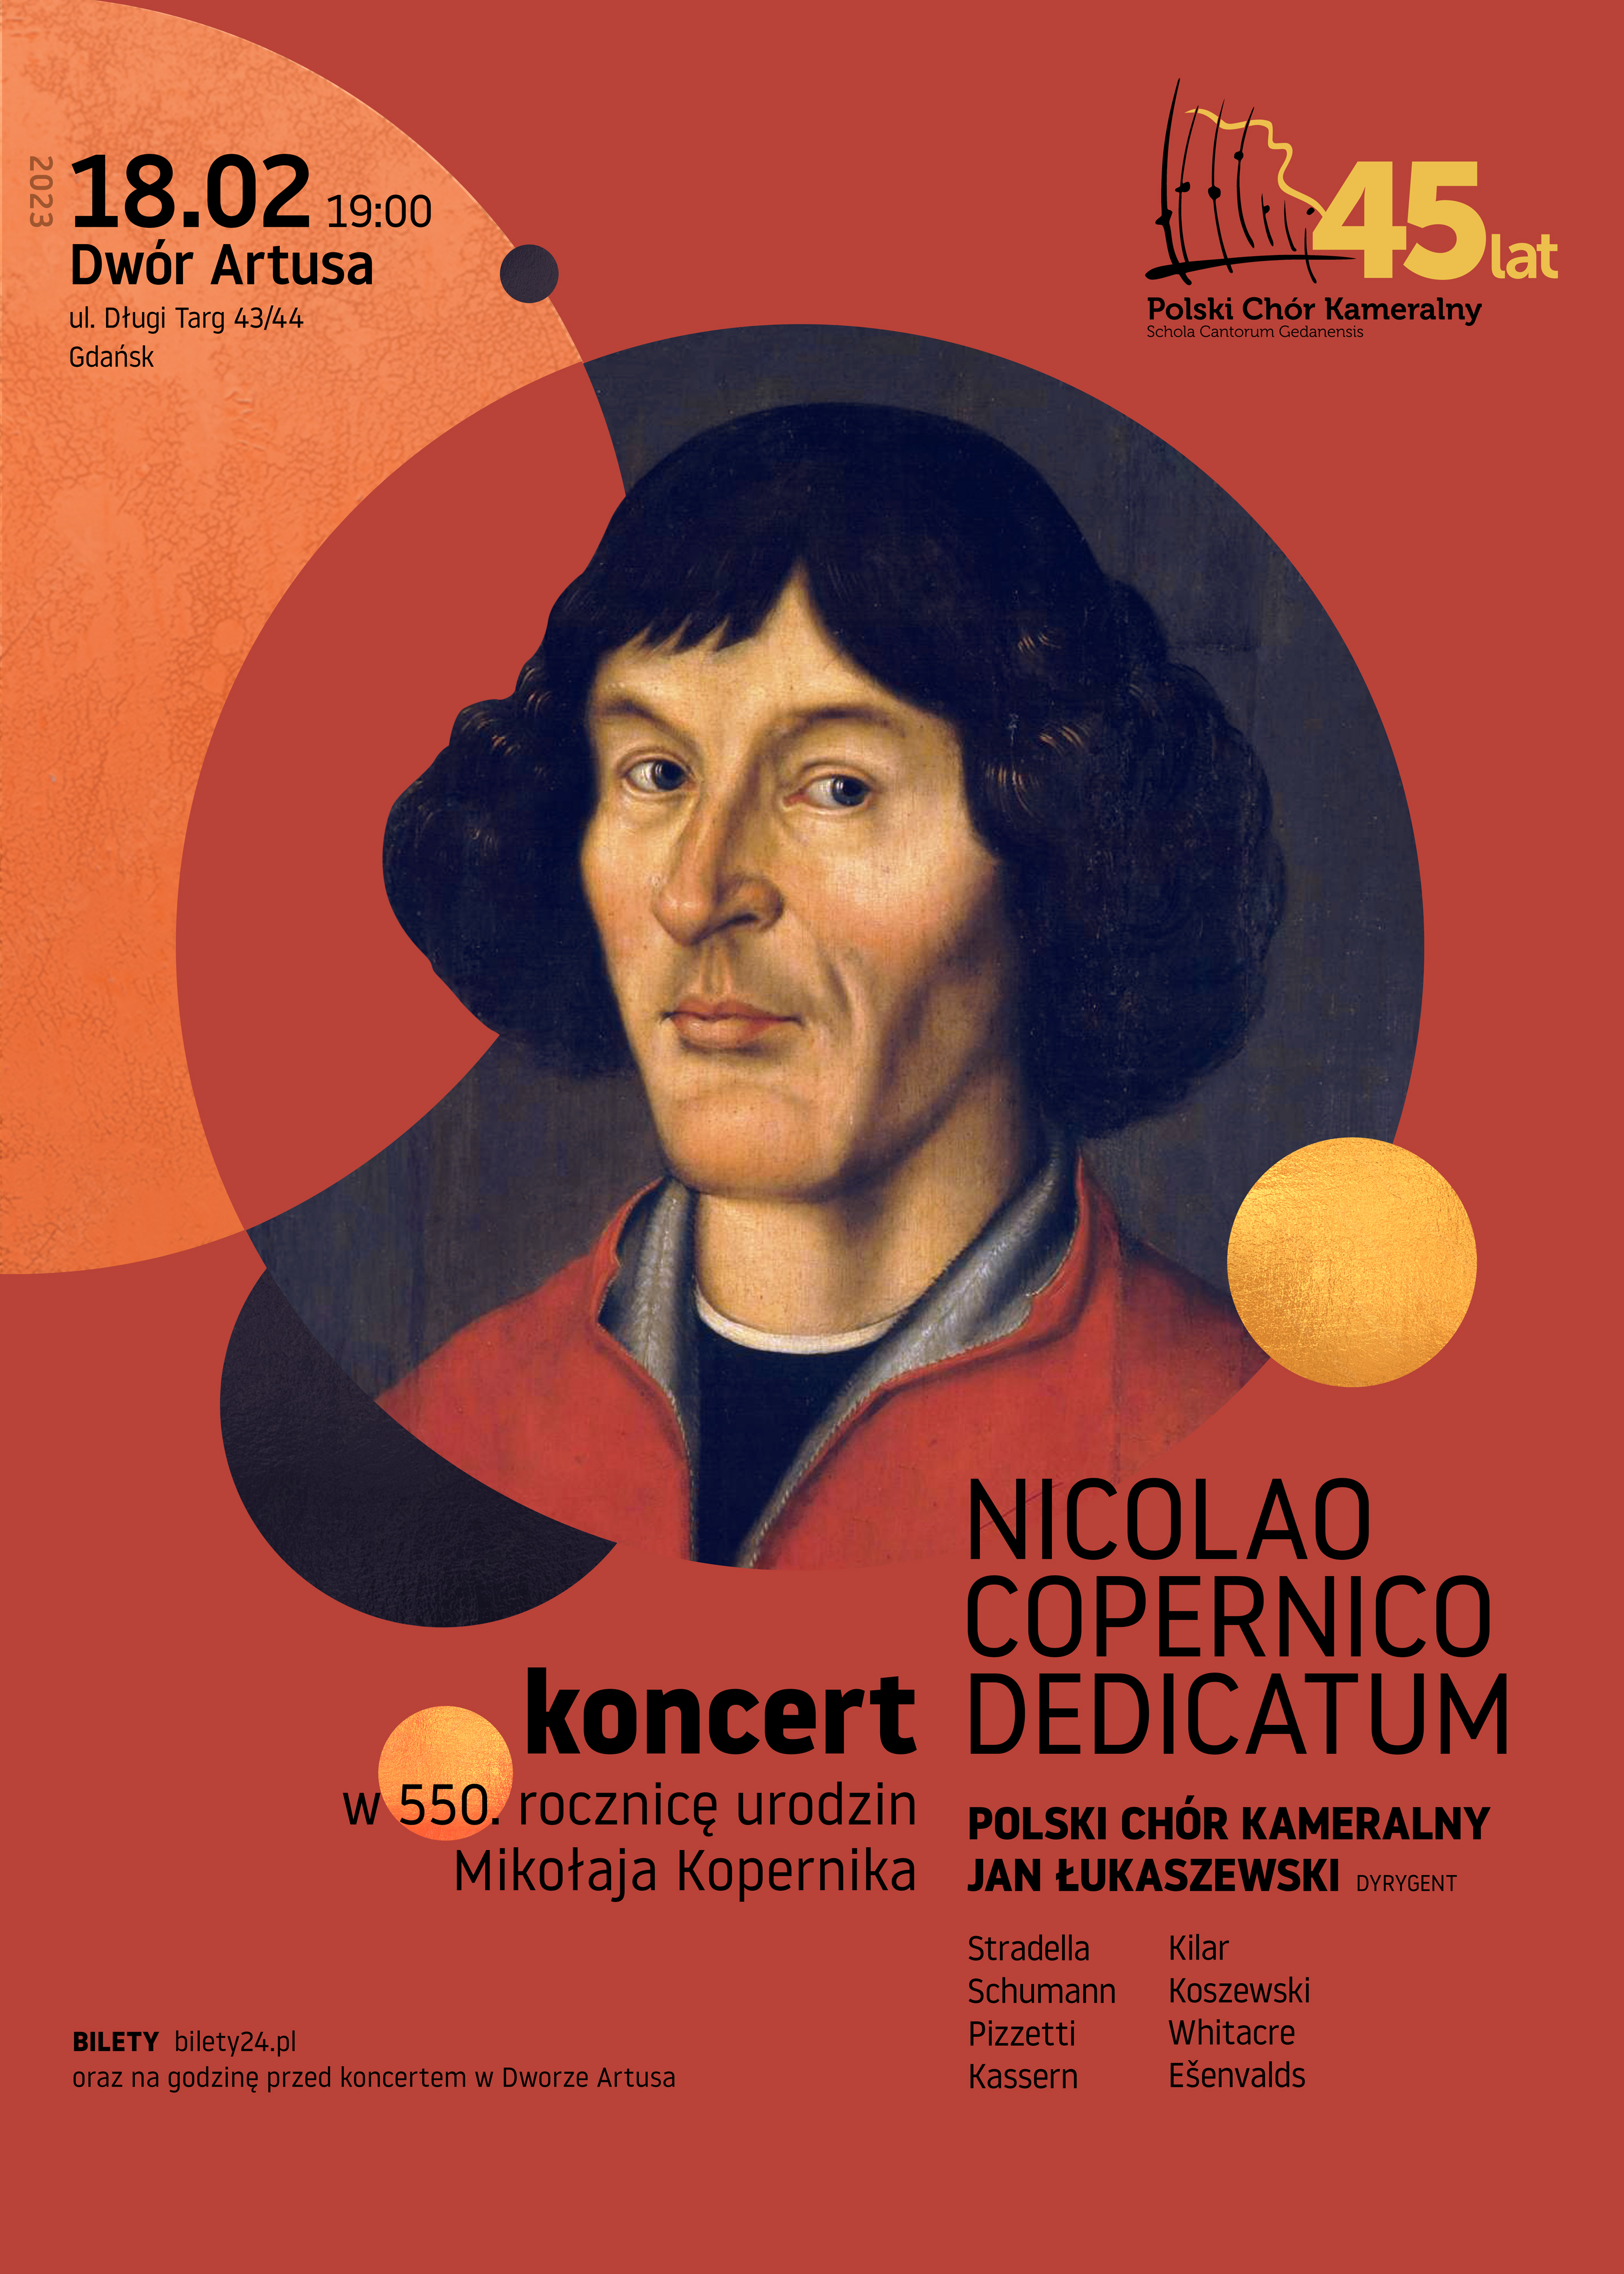 NICOLAO COPERNICO DEDICATUM koncert w 550. rocznicę urodzin Mikołaja Kopernika